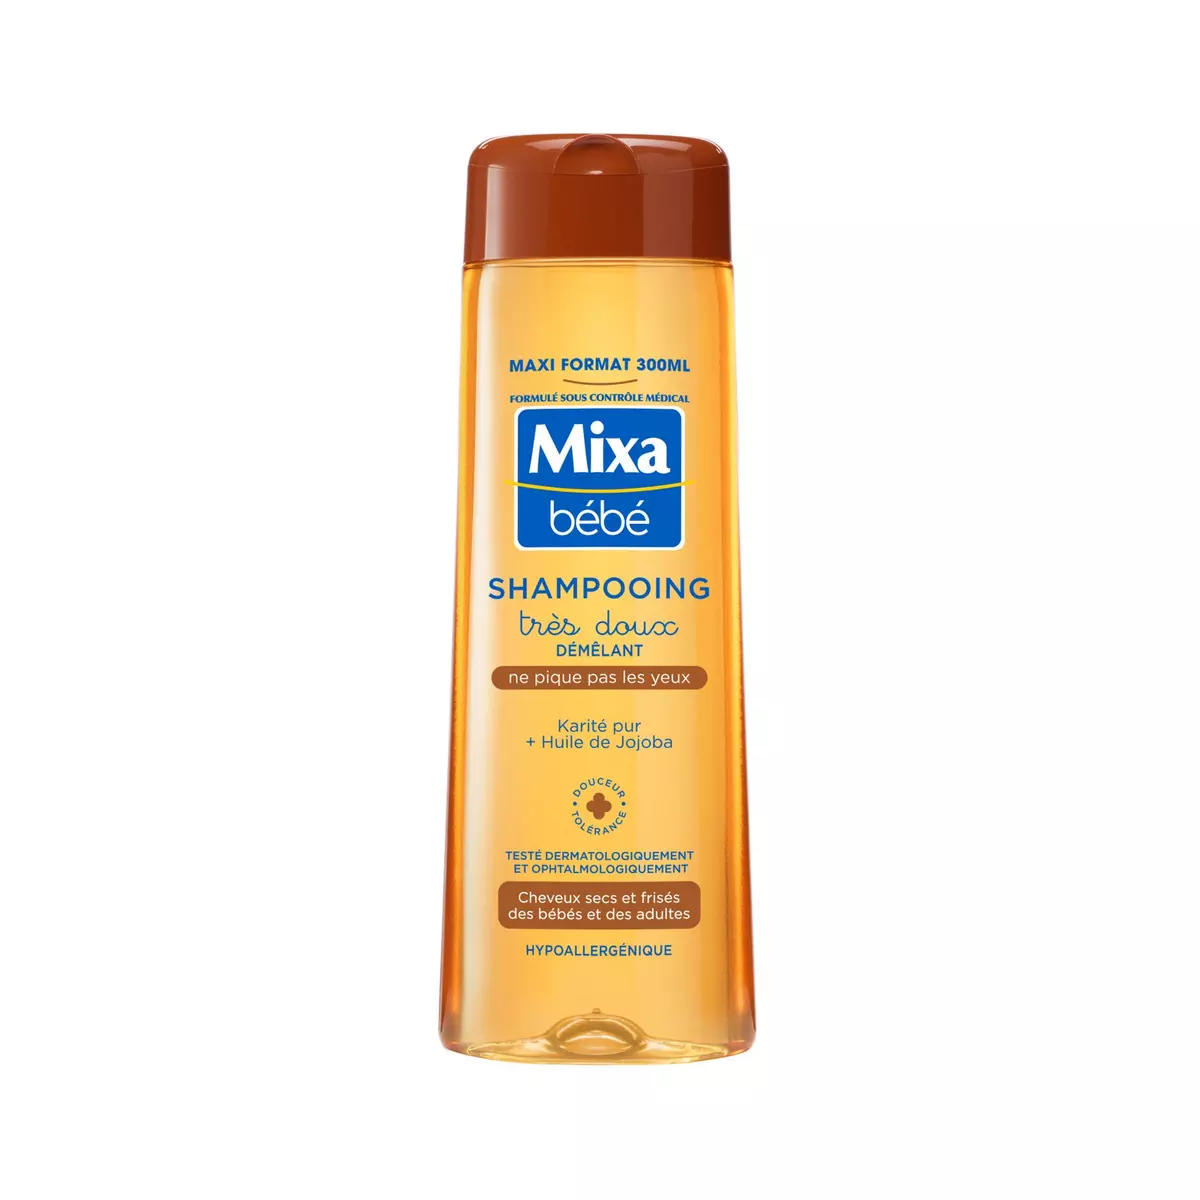 MIXA BEBE Shampooing très doux démêlant pour cheveux secs et frisés bébé et adultes 300ml